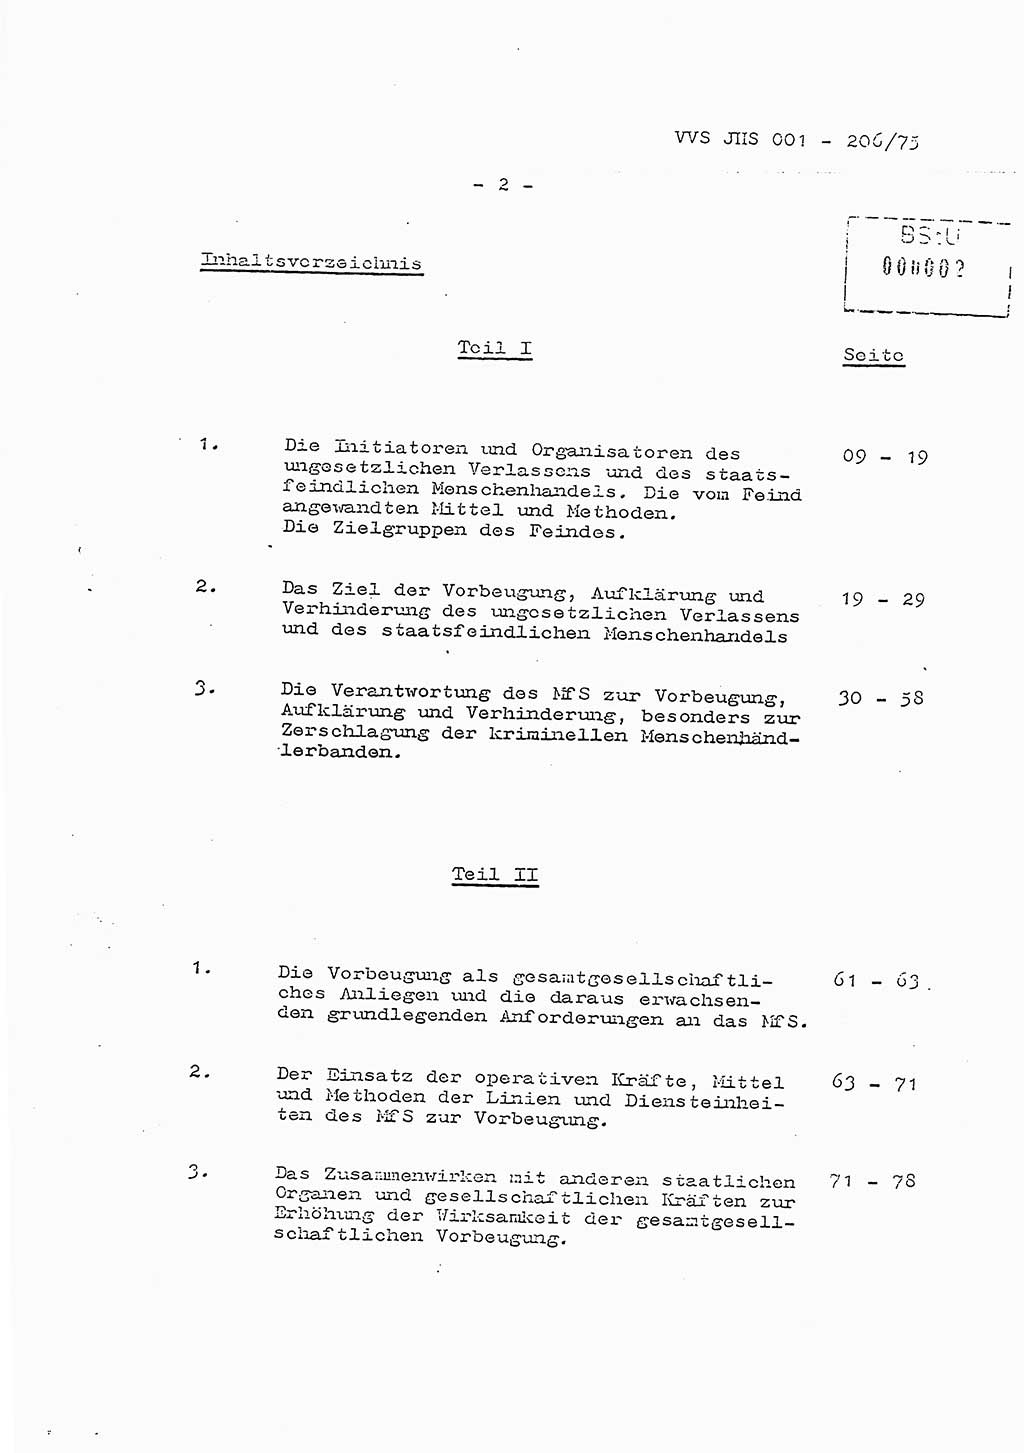 Dissertation Generalmajor Manfred Hummitzsch (Leiter der BV Leipzig), Generalmajor Heinz Fiedler (HA Ⅵ), Oberst Rolf Fister (HA Ⅸ), Ministerium für Staatssicherheit (MfS) [Deutsche Demokratische Republik (DDR)], Juristische Hochschule (JHS), Vertrauliche Verschlußsache (VVS) 001-206/75, Potsdam 1975, Seite 2 (Diss. MfS DDR JHS VVS 001-206/75 1975, S. 2)